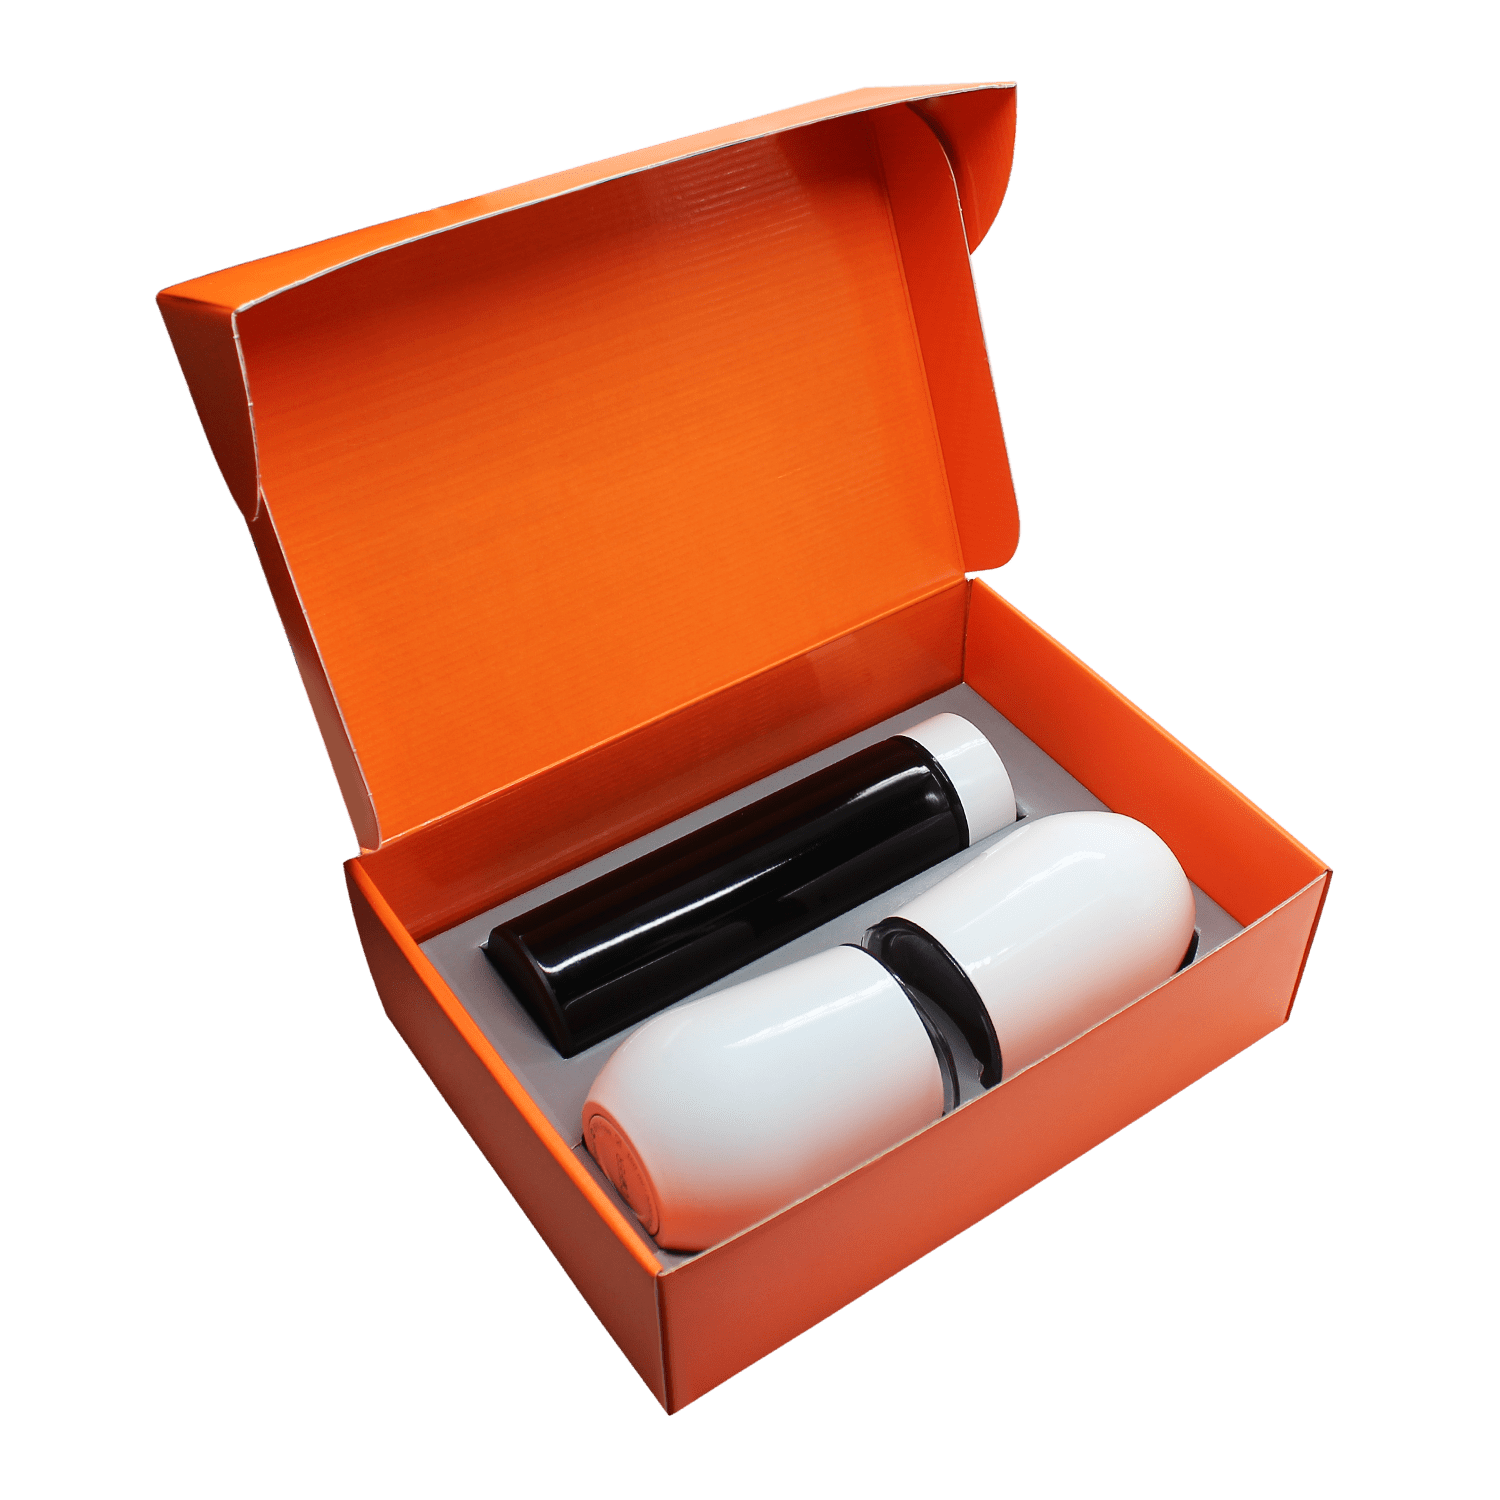 Набор Hot Box Duo C2W G (черный с белым), черный, металл, микрогофрокартон